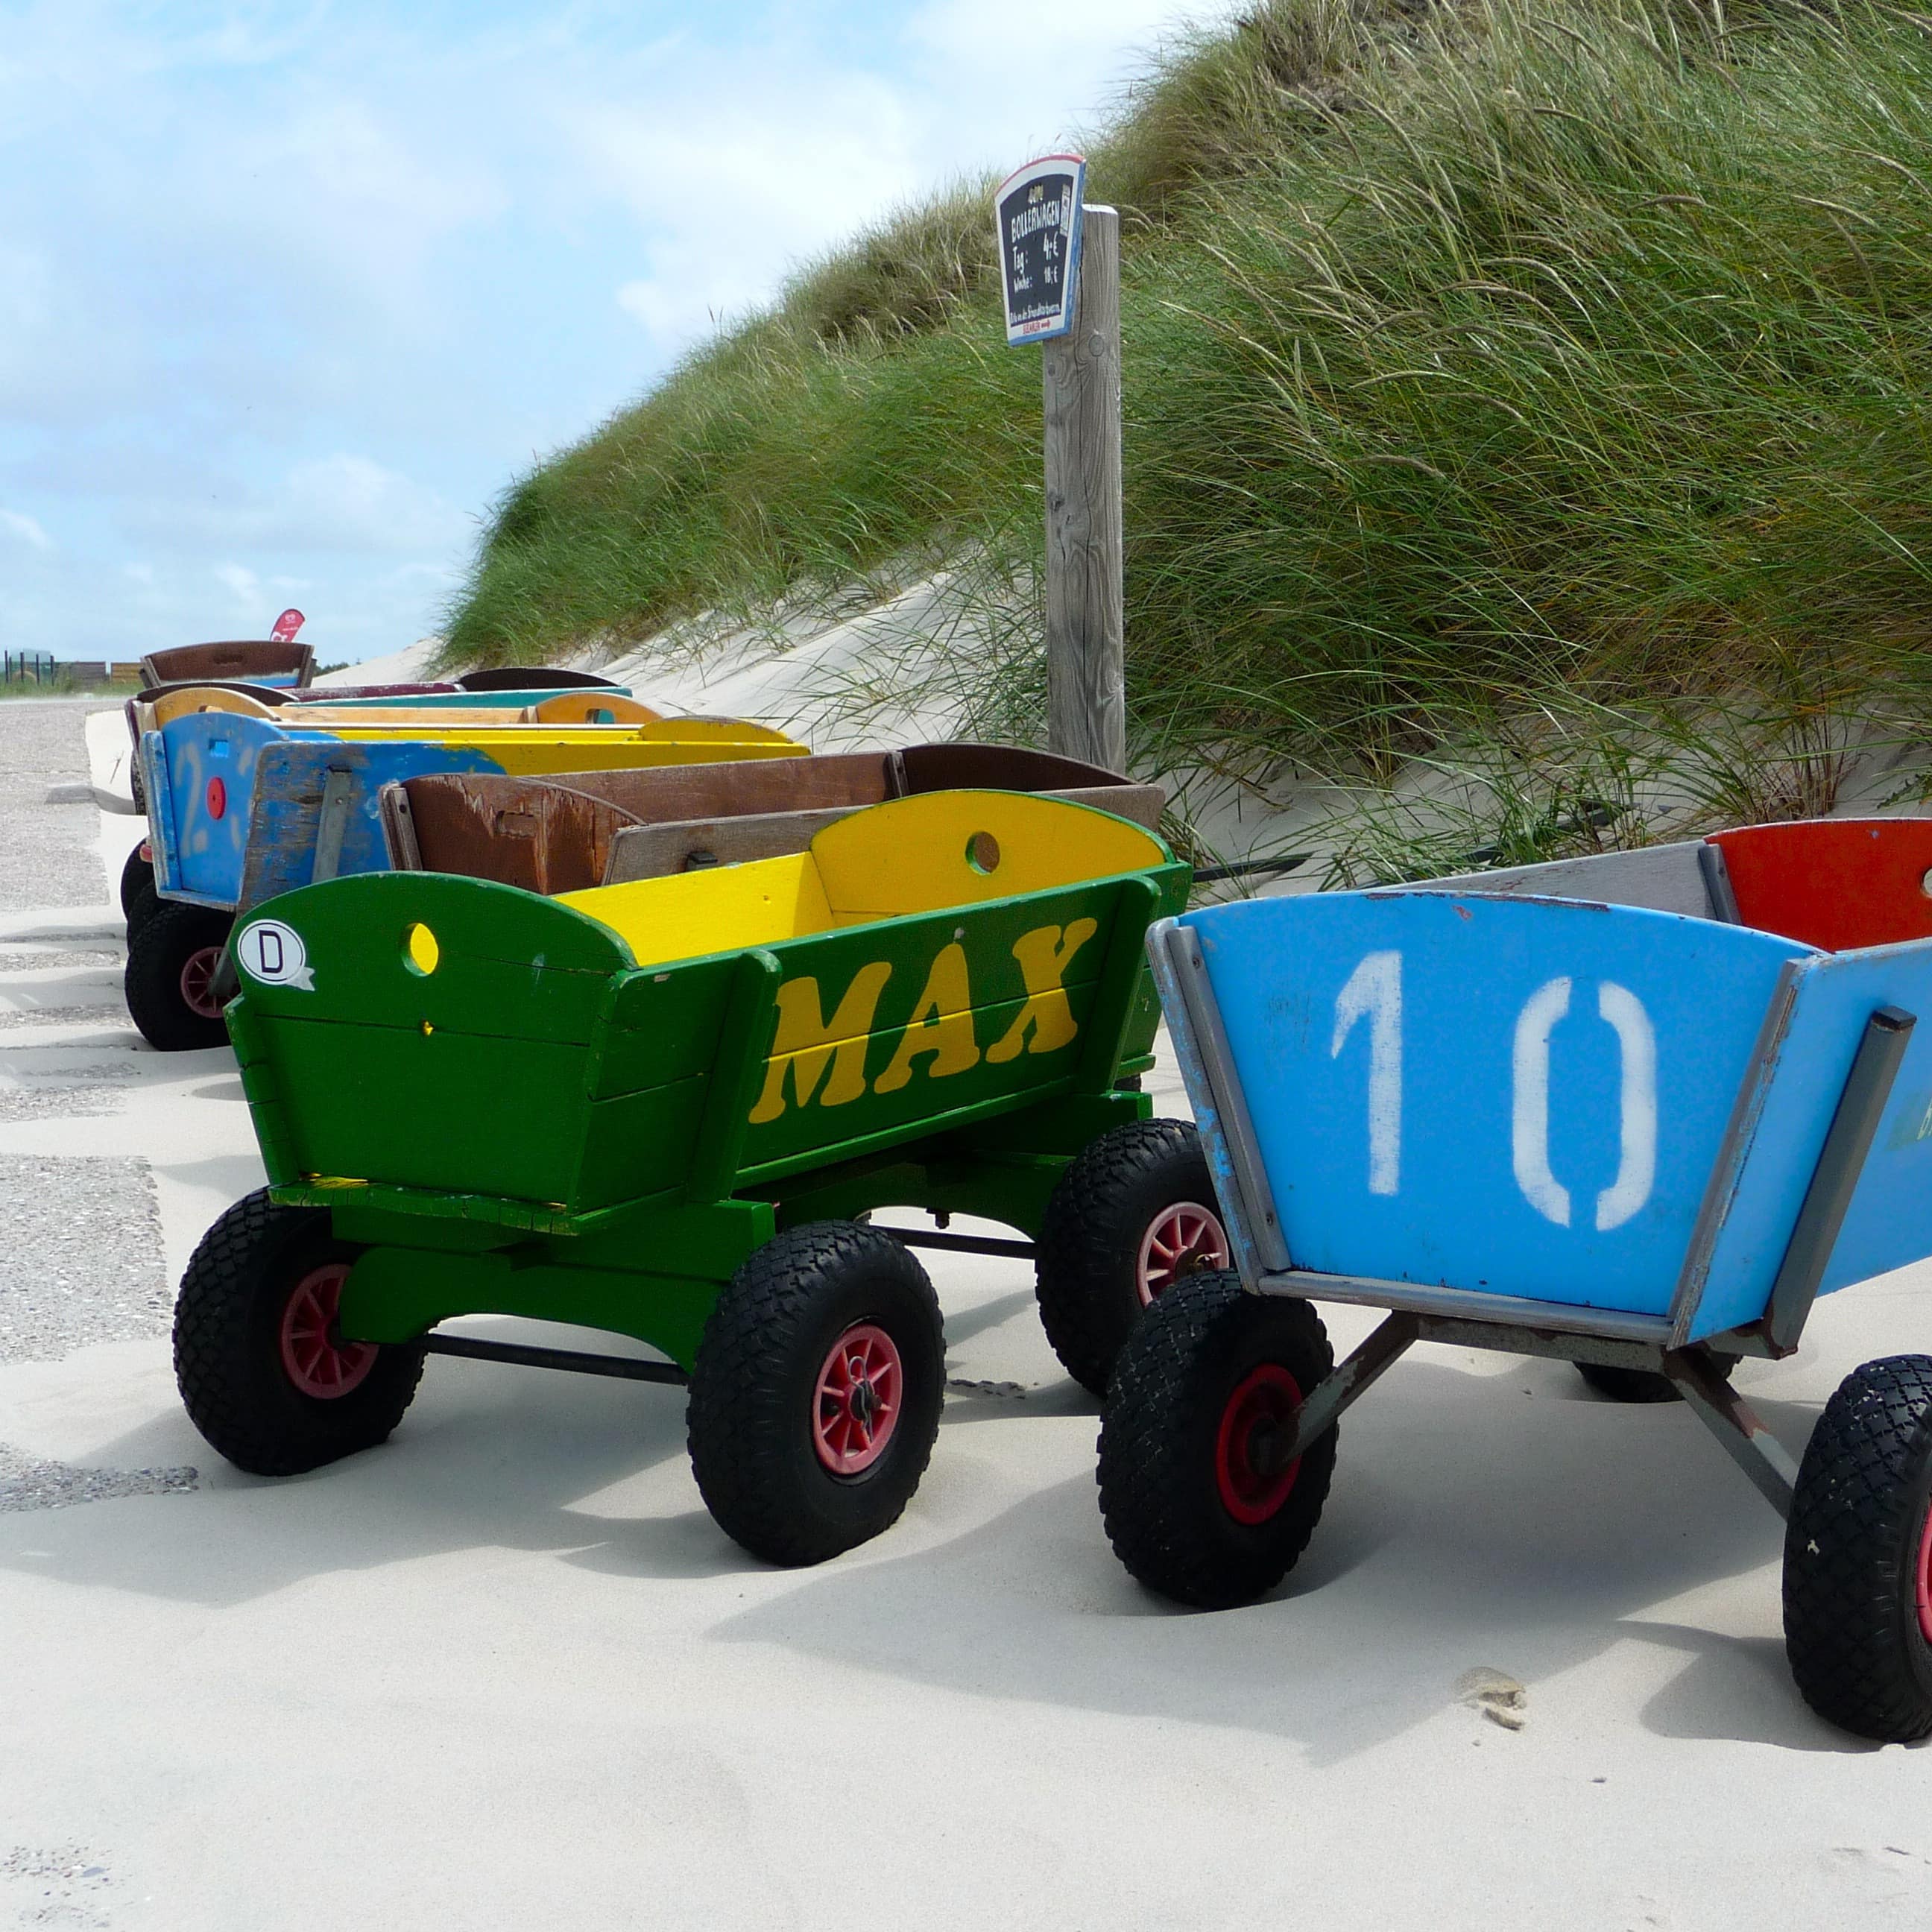 Bunte Bollerwagen am Strand von Amrum.